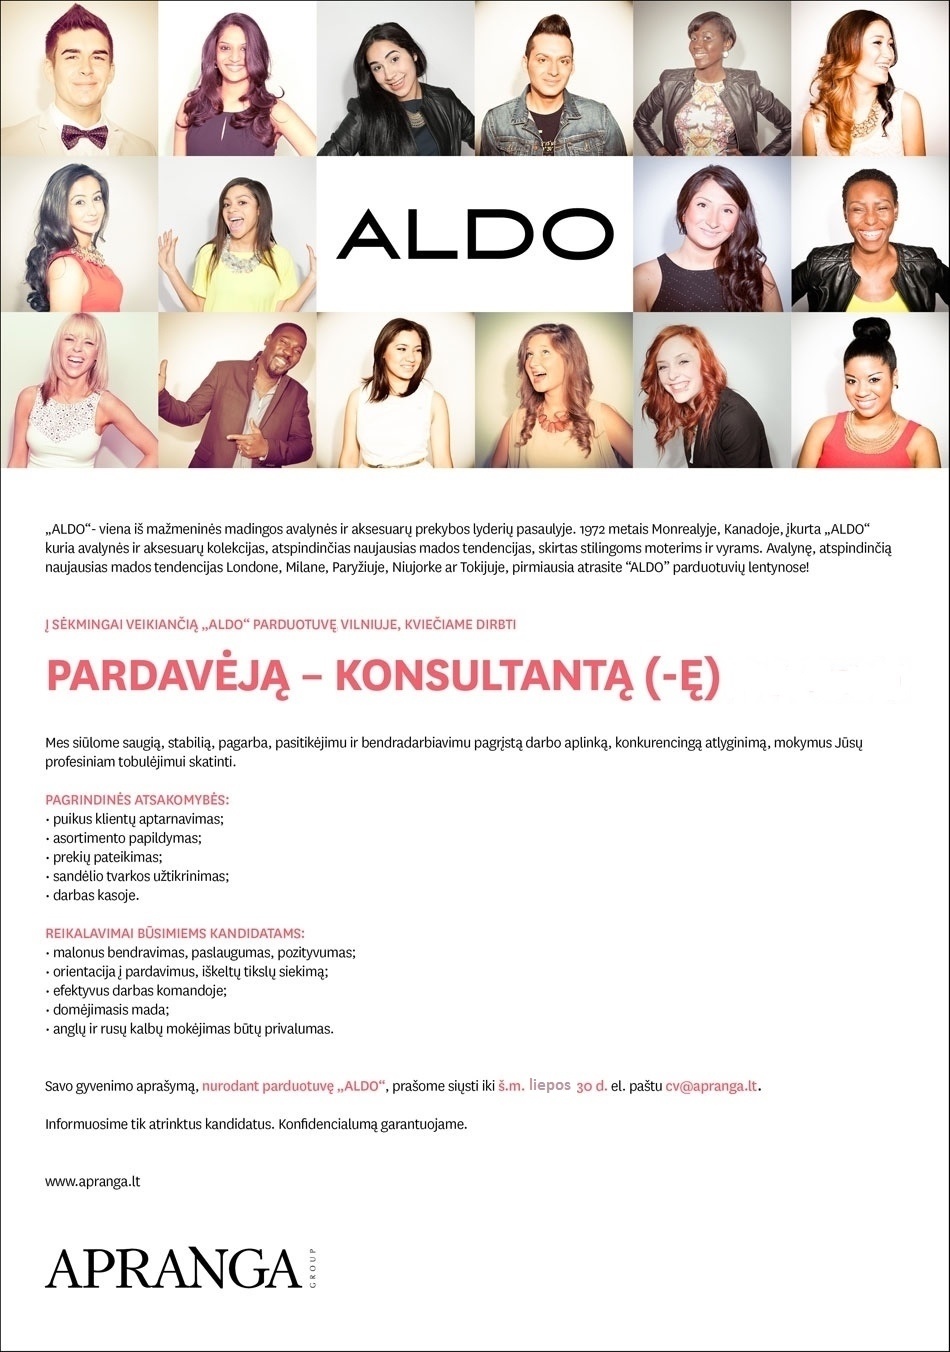 "Aprangos" grupė Pardavėjas (-a) Konsultantas (-ė) parduotuvėje "ALDO" Vilniuje